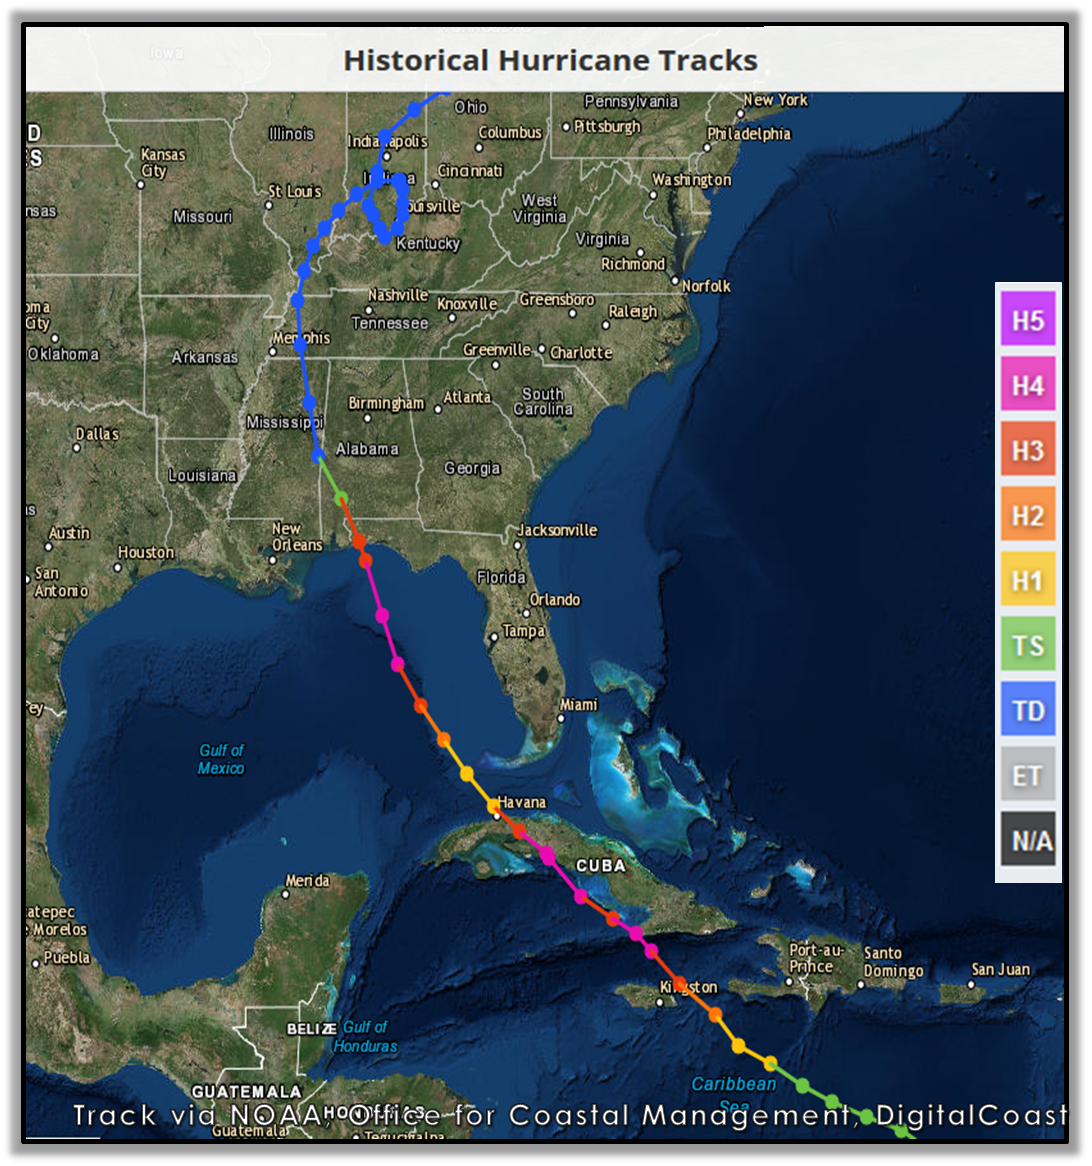 Hurricane Dennis - July 10, 20051092 x 1166